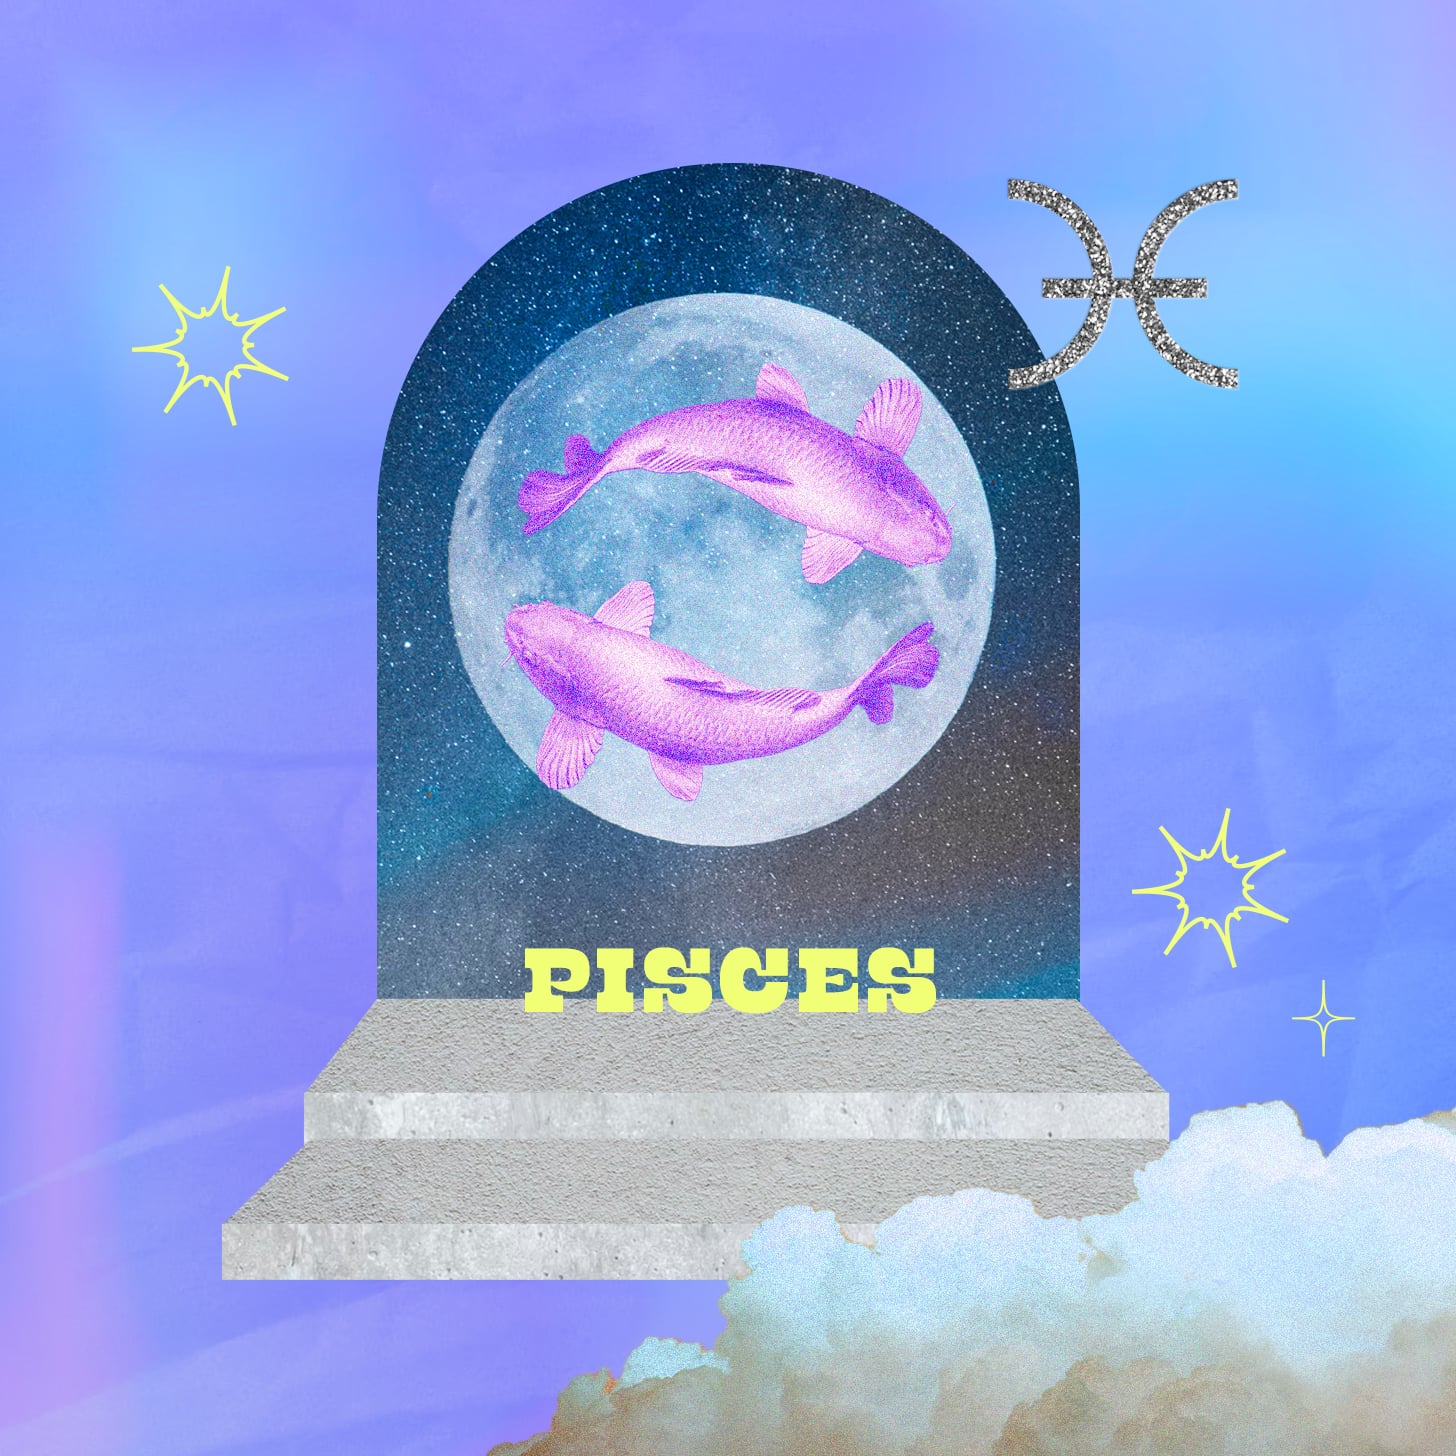 Pisces weekly horoscope for September 18, 2022